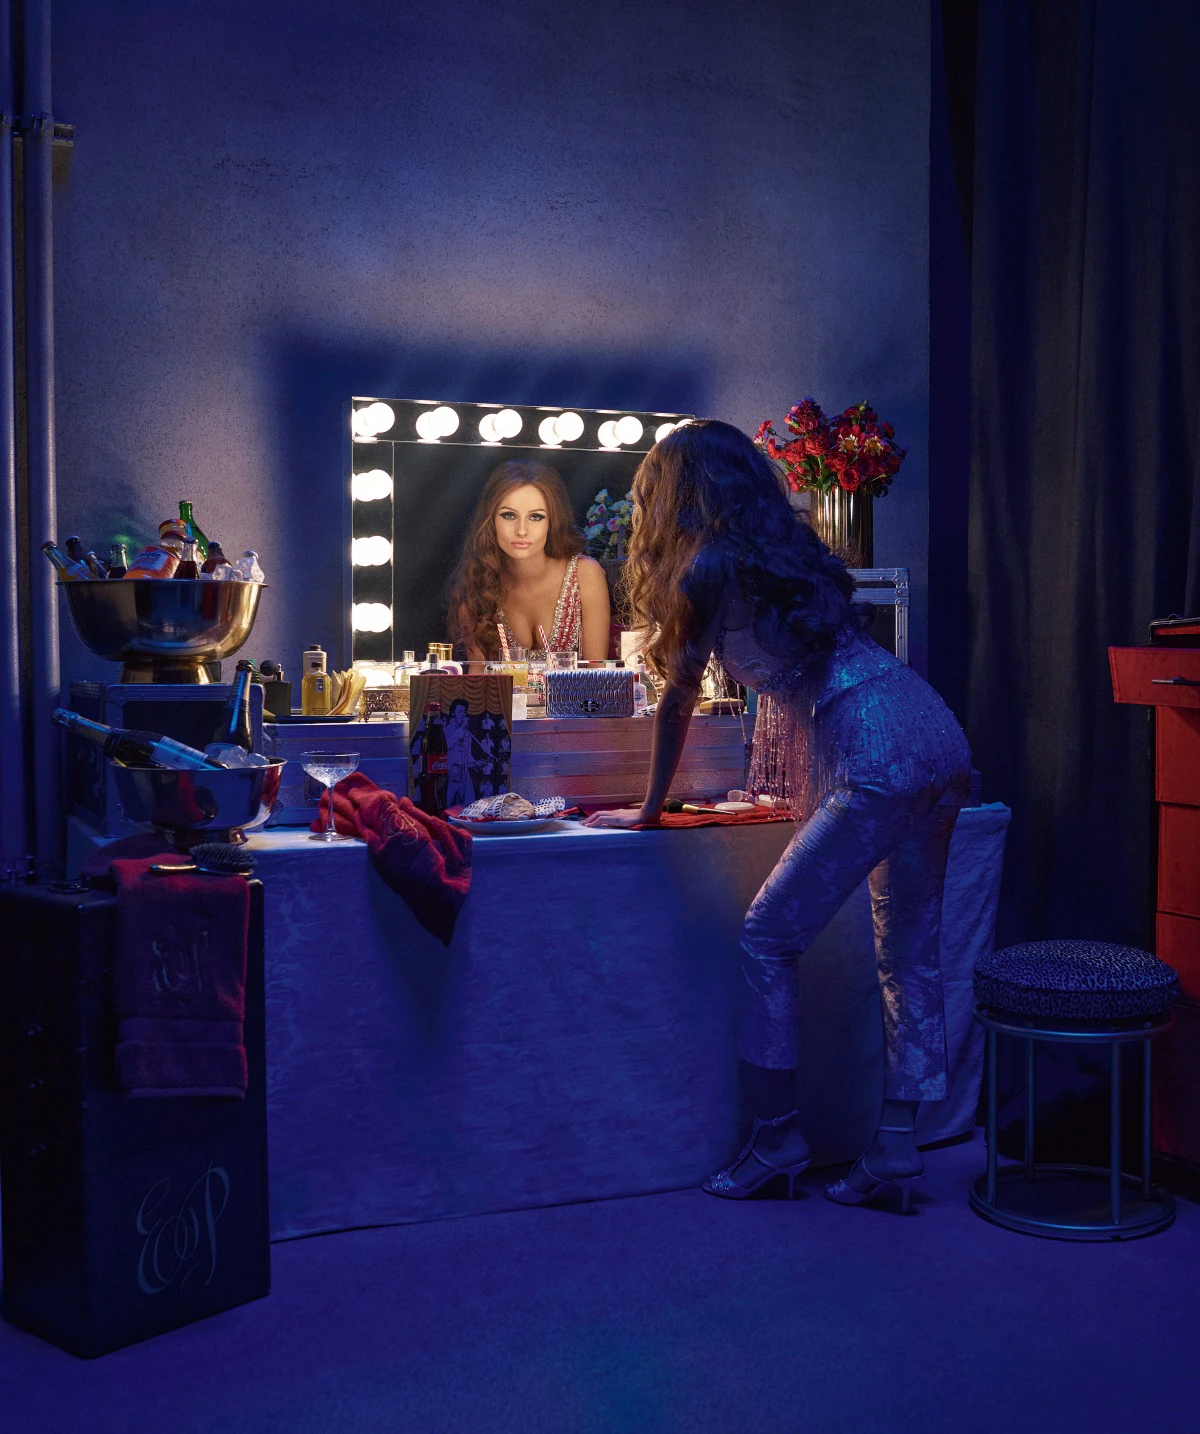 Olivia DeJonge jako Priscilla Presley połyskującej tunice od Miu Miu za kulisami filmu. Zdjęcie zrobiono na planie repliki showroomu International Hotel.